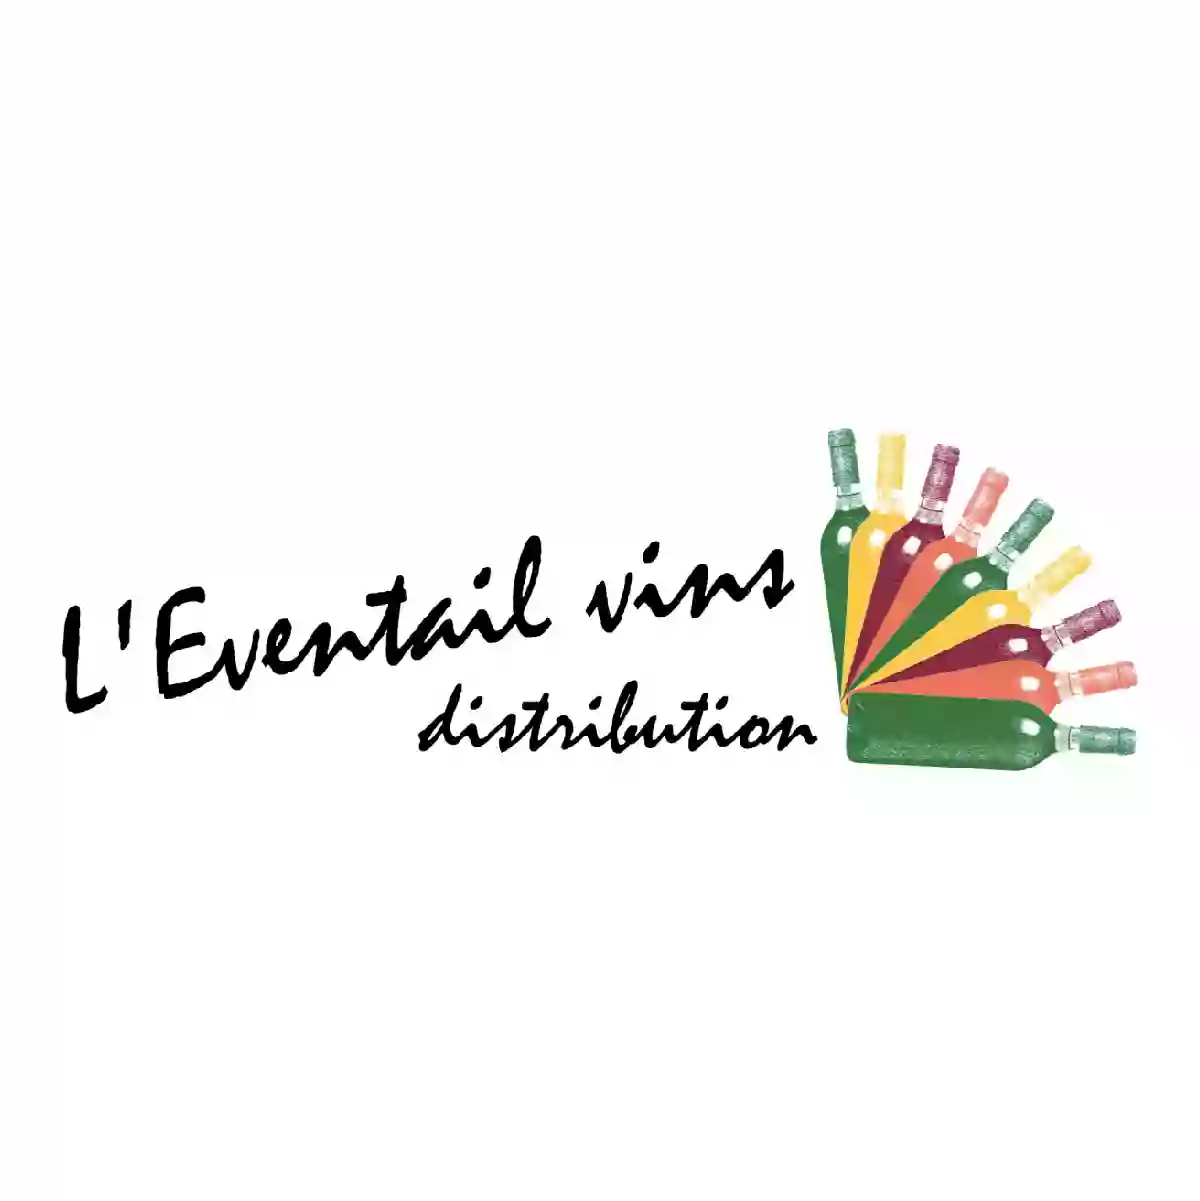 L'Éventail Vins Distribution